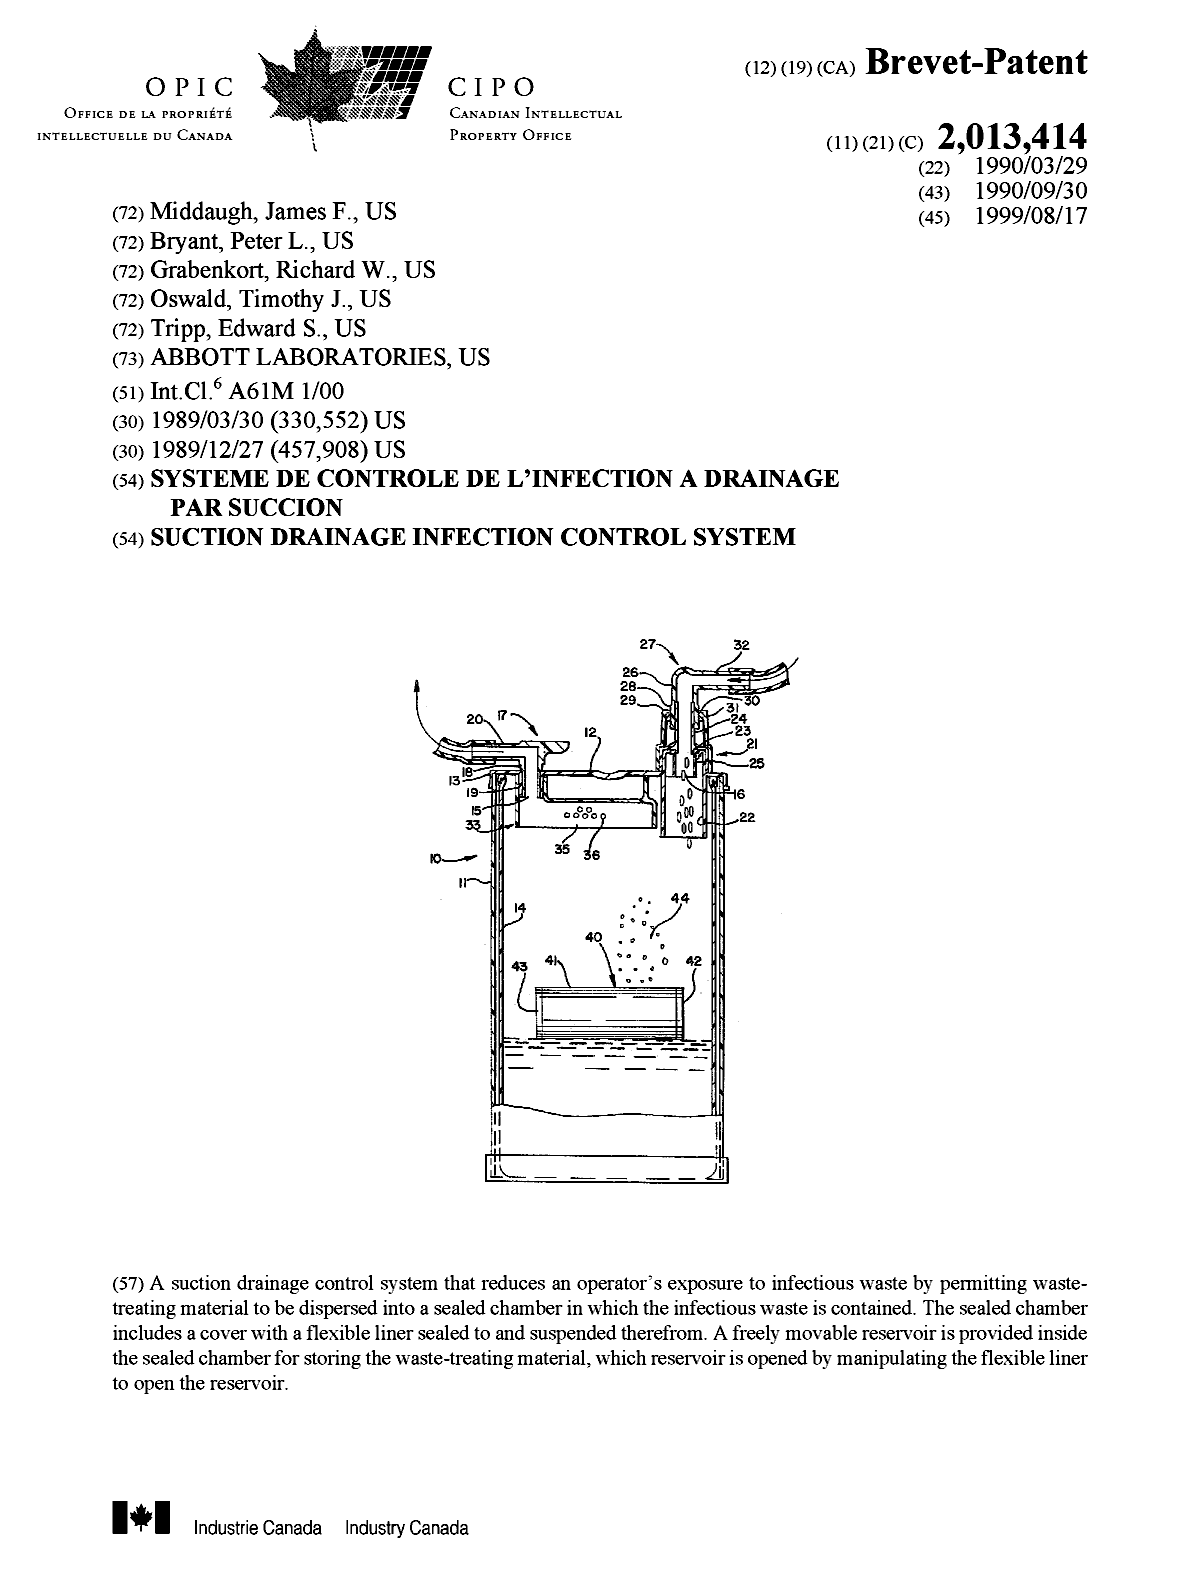 Document de brevet canadien 2013414. Page couverture 19990810. Image 1 de 1